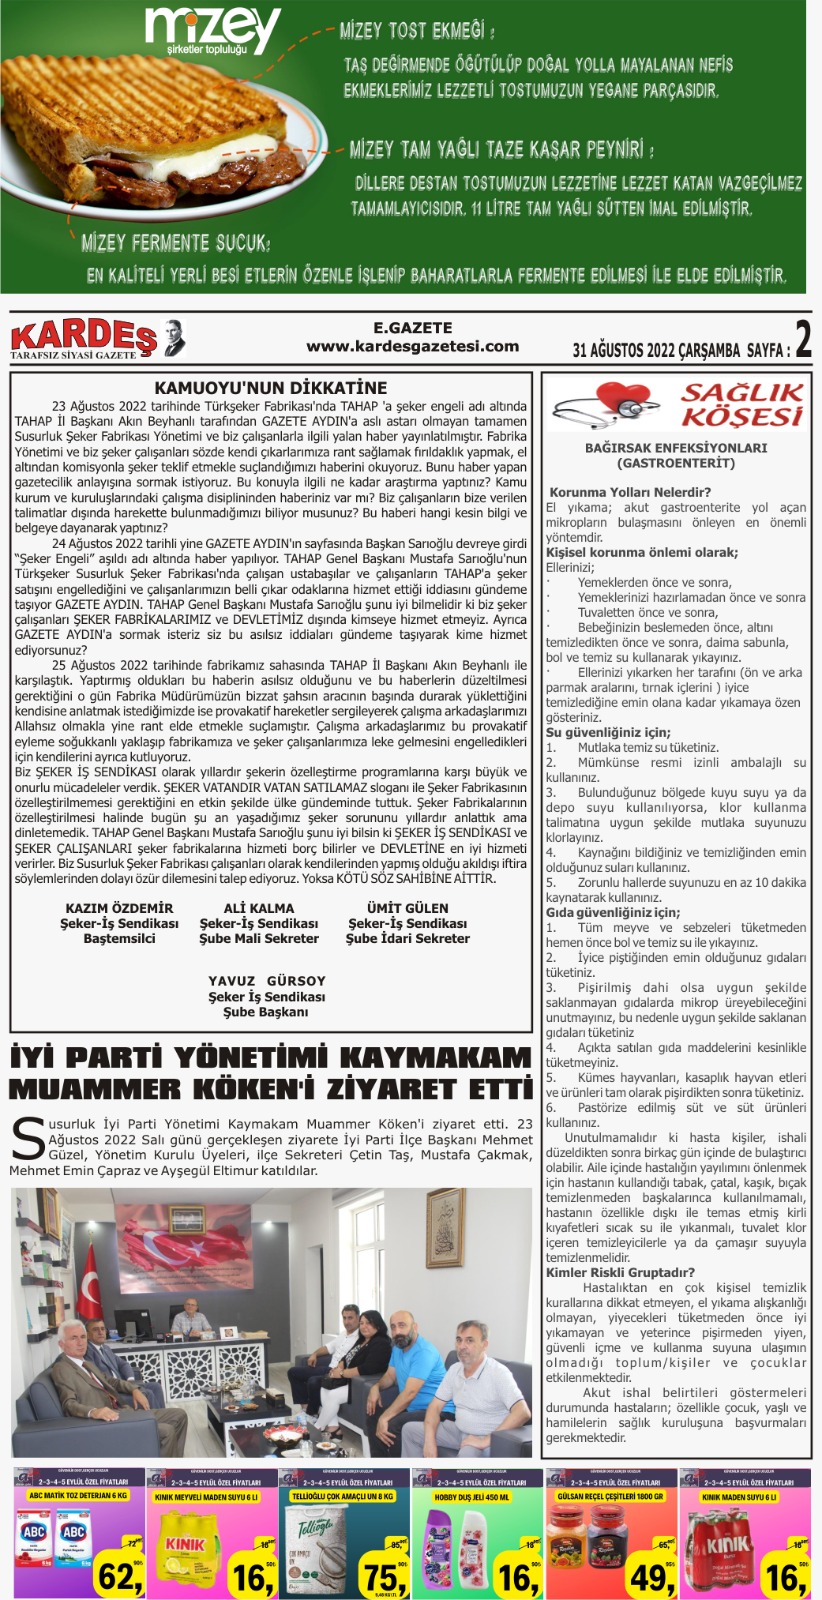 31.08.2022 Tarihli Kardeş Gazetesi Sayfa 2